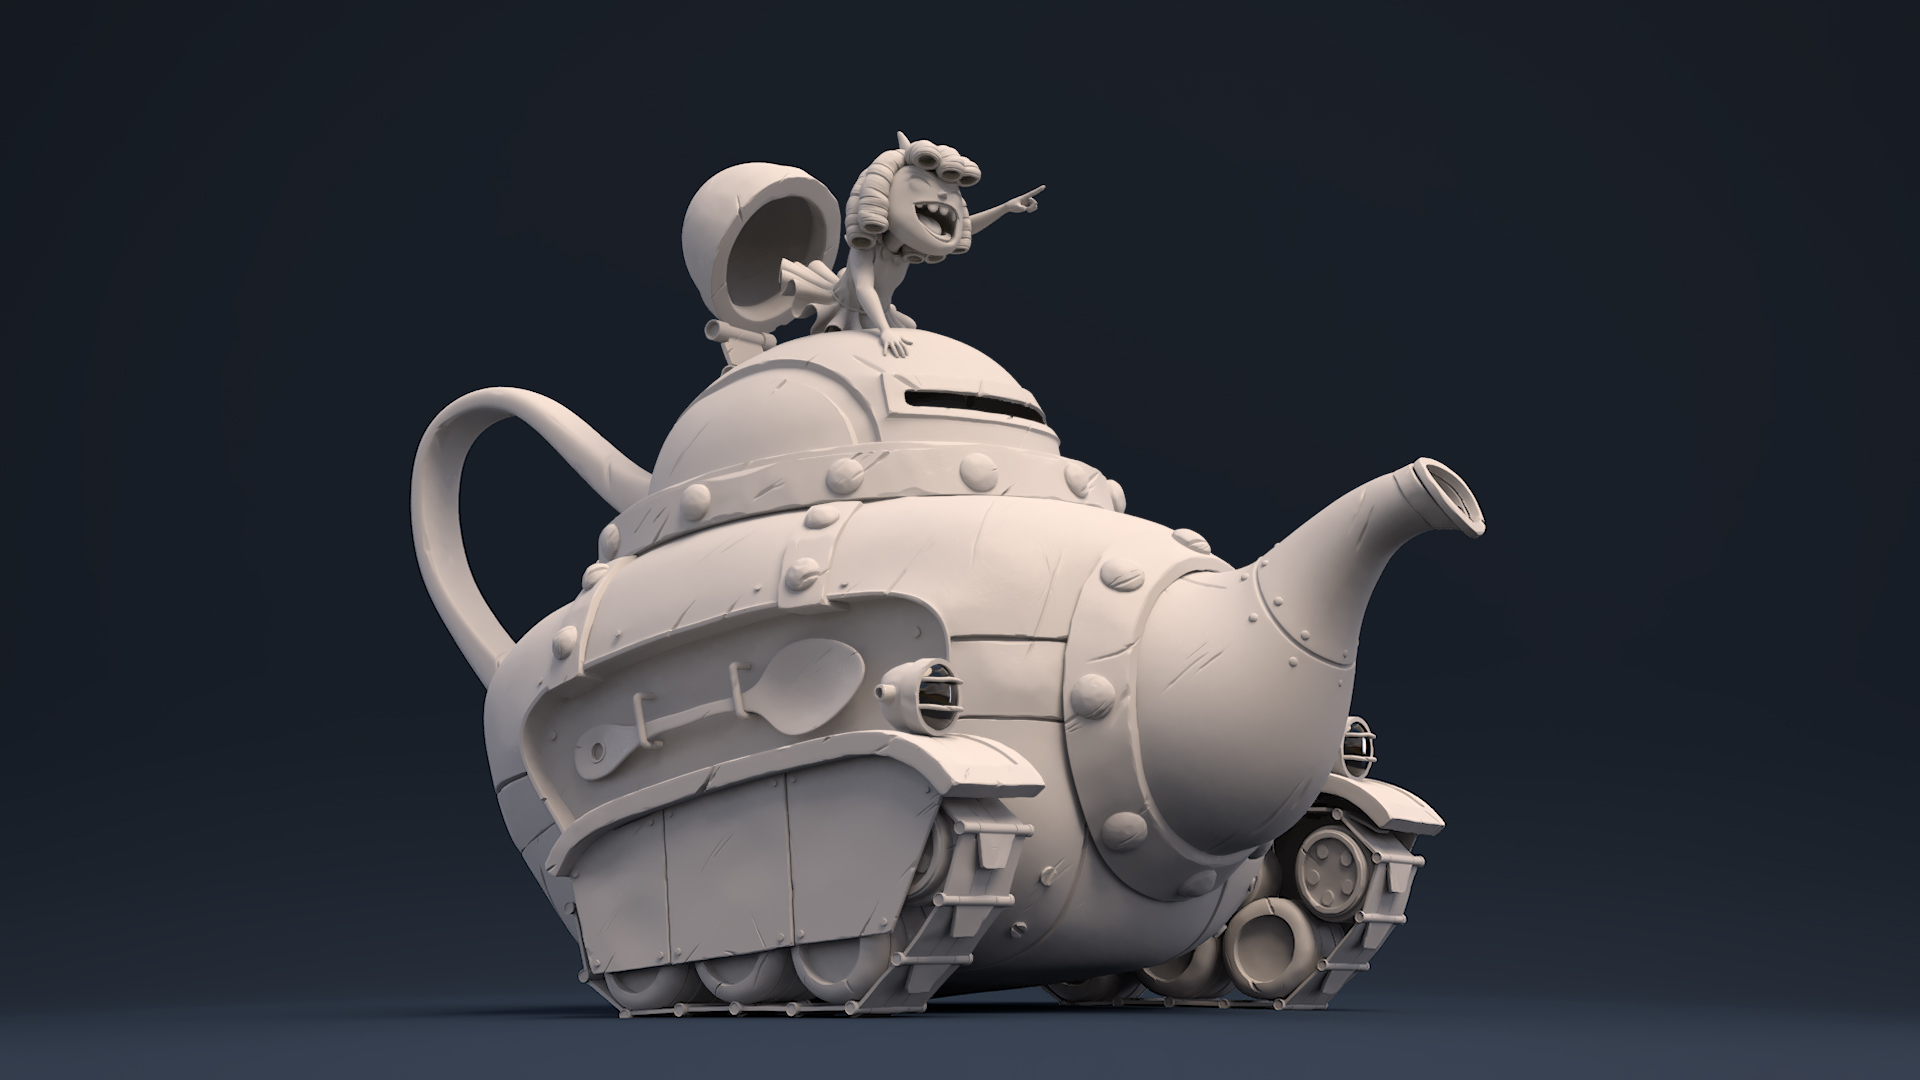 Teapot.jpg